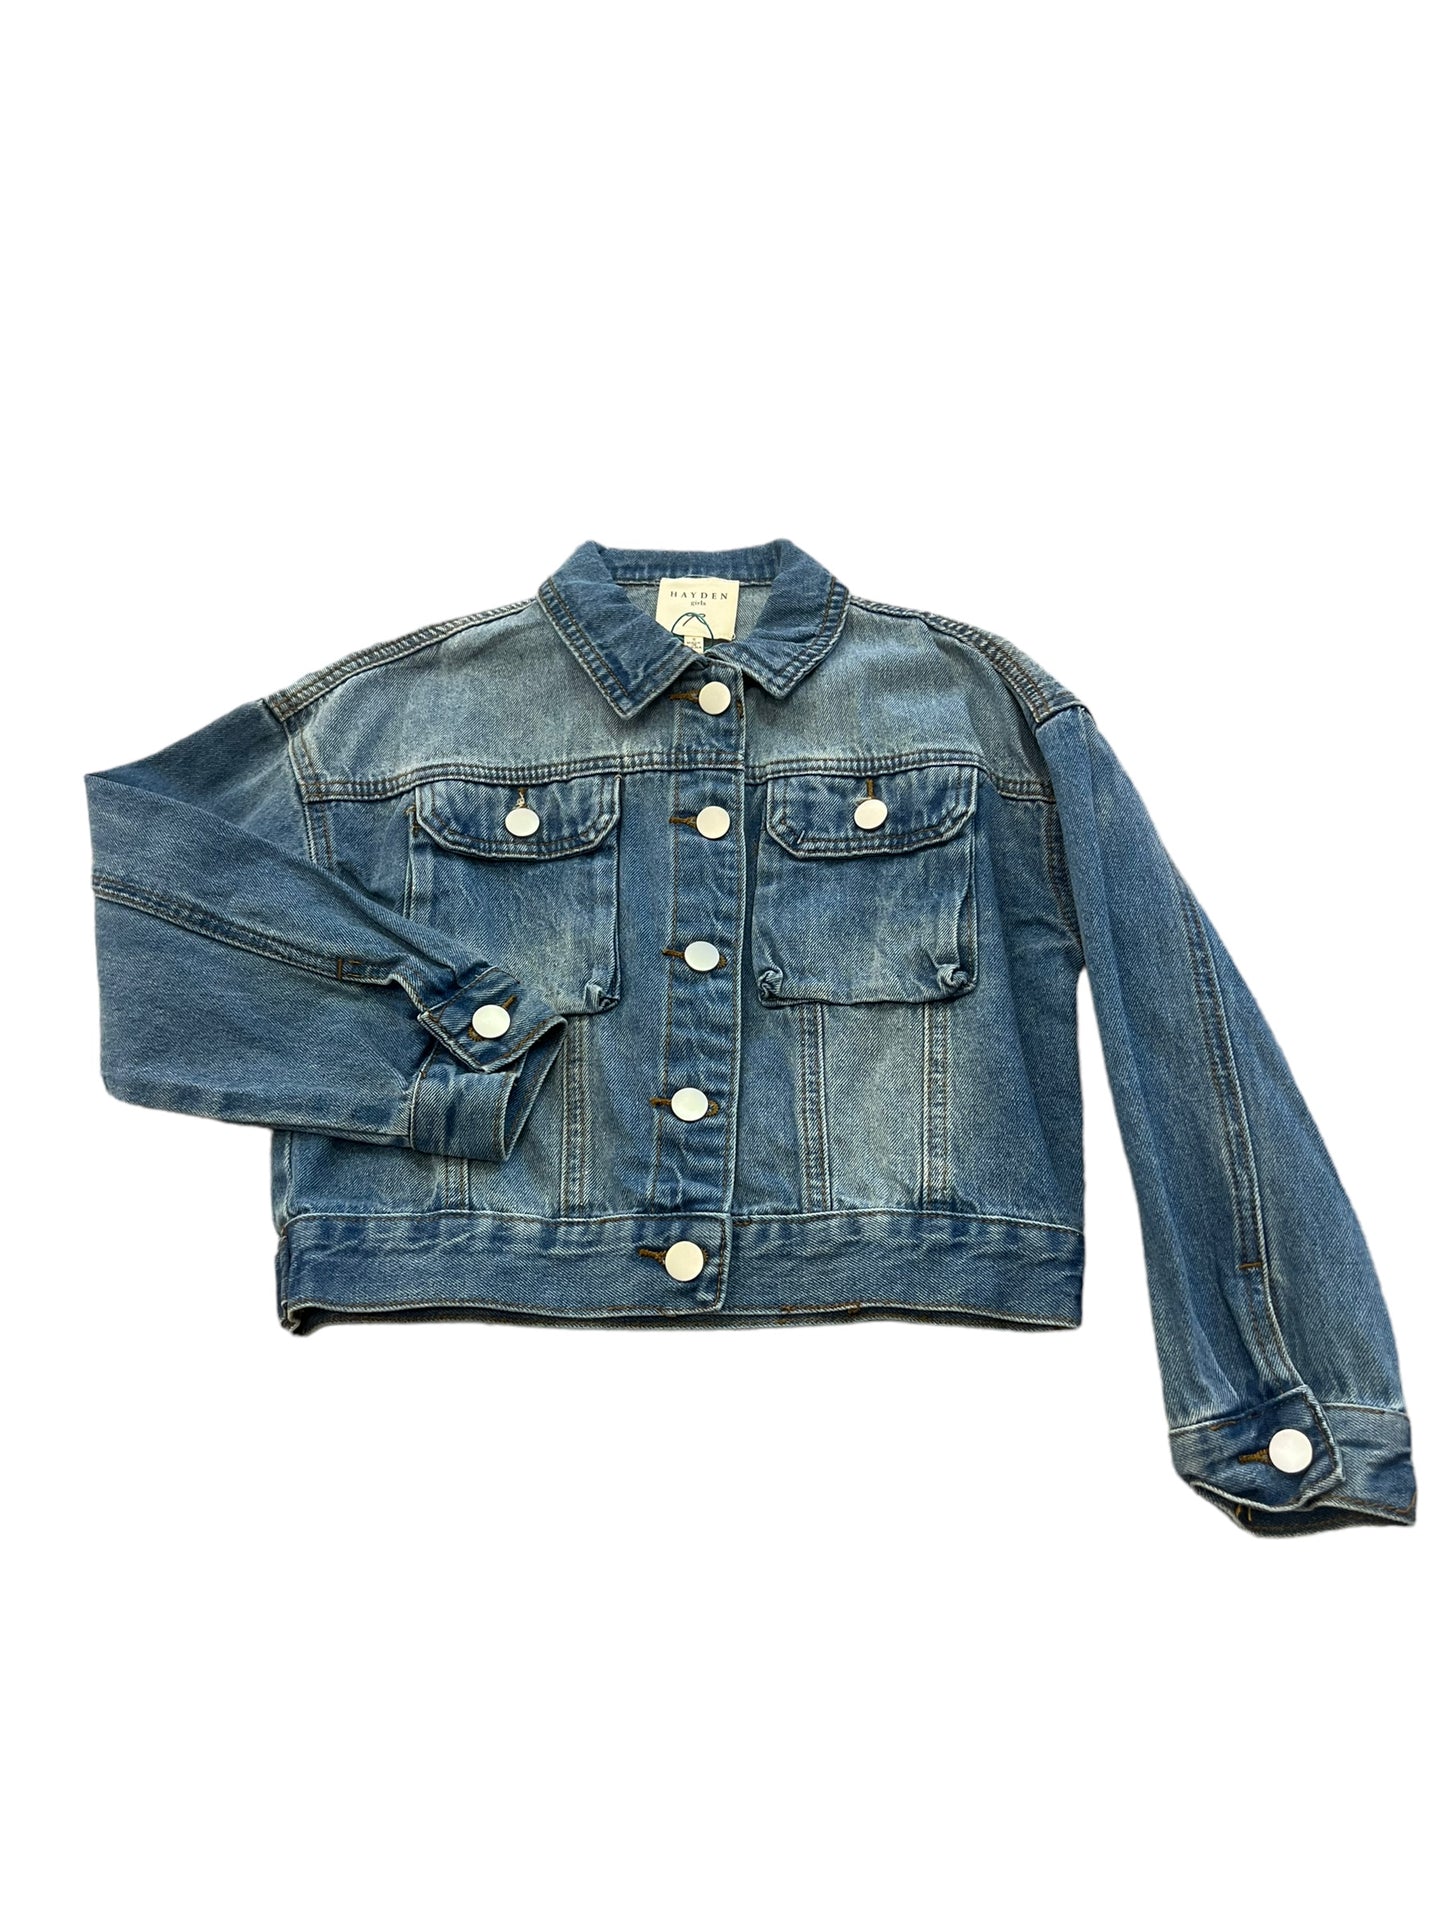 Blue Jean Jacket